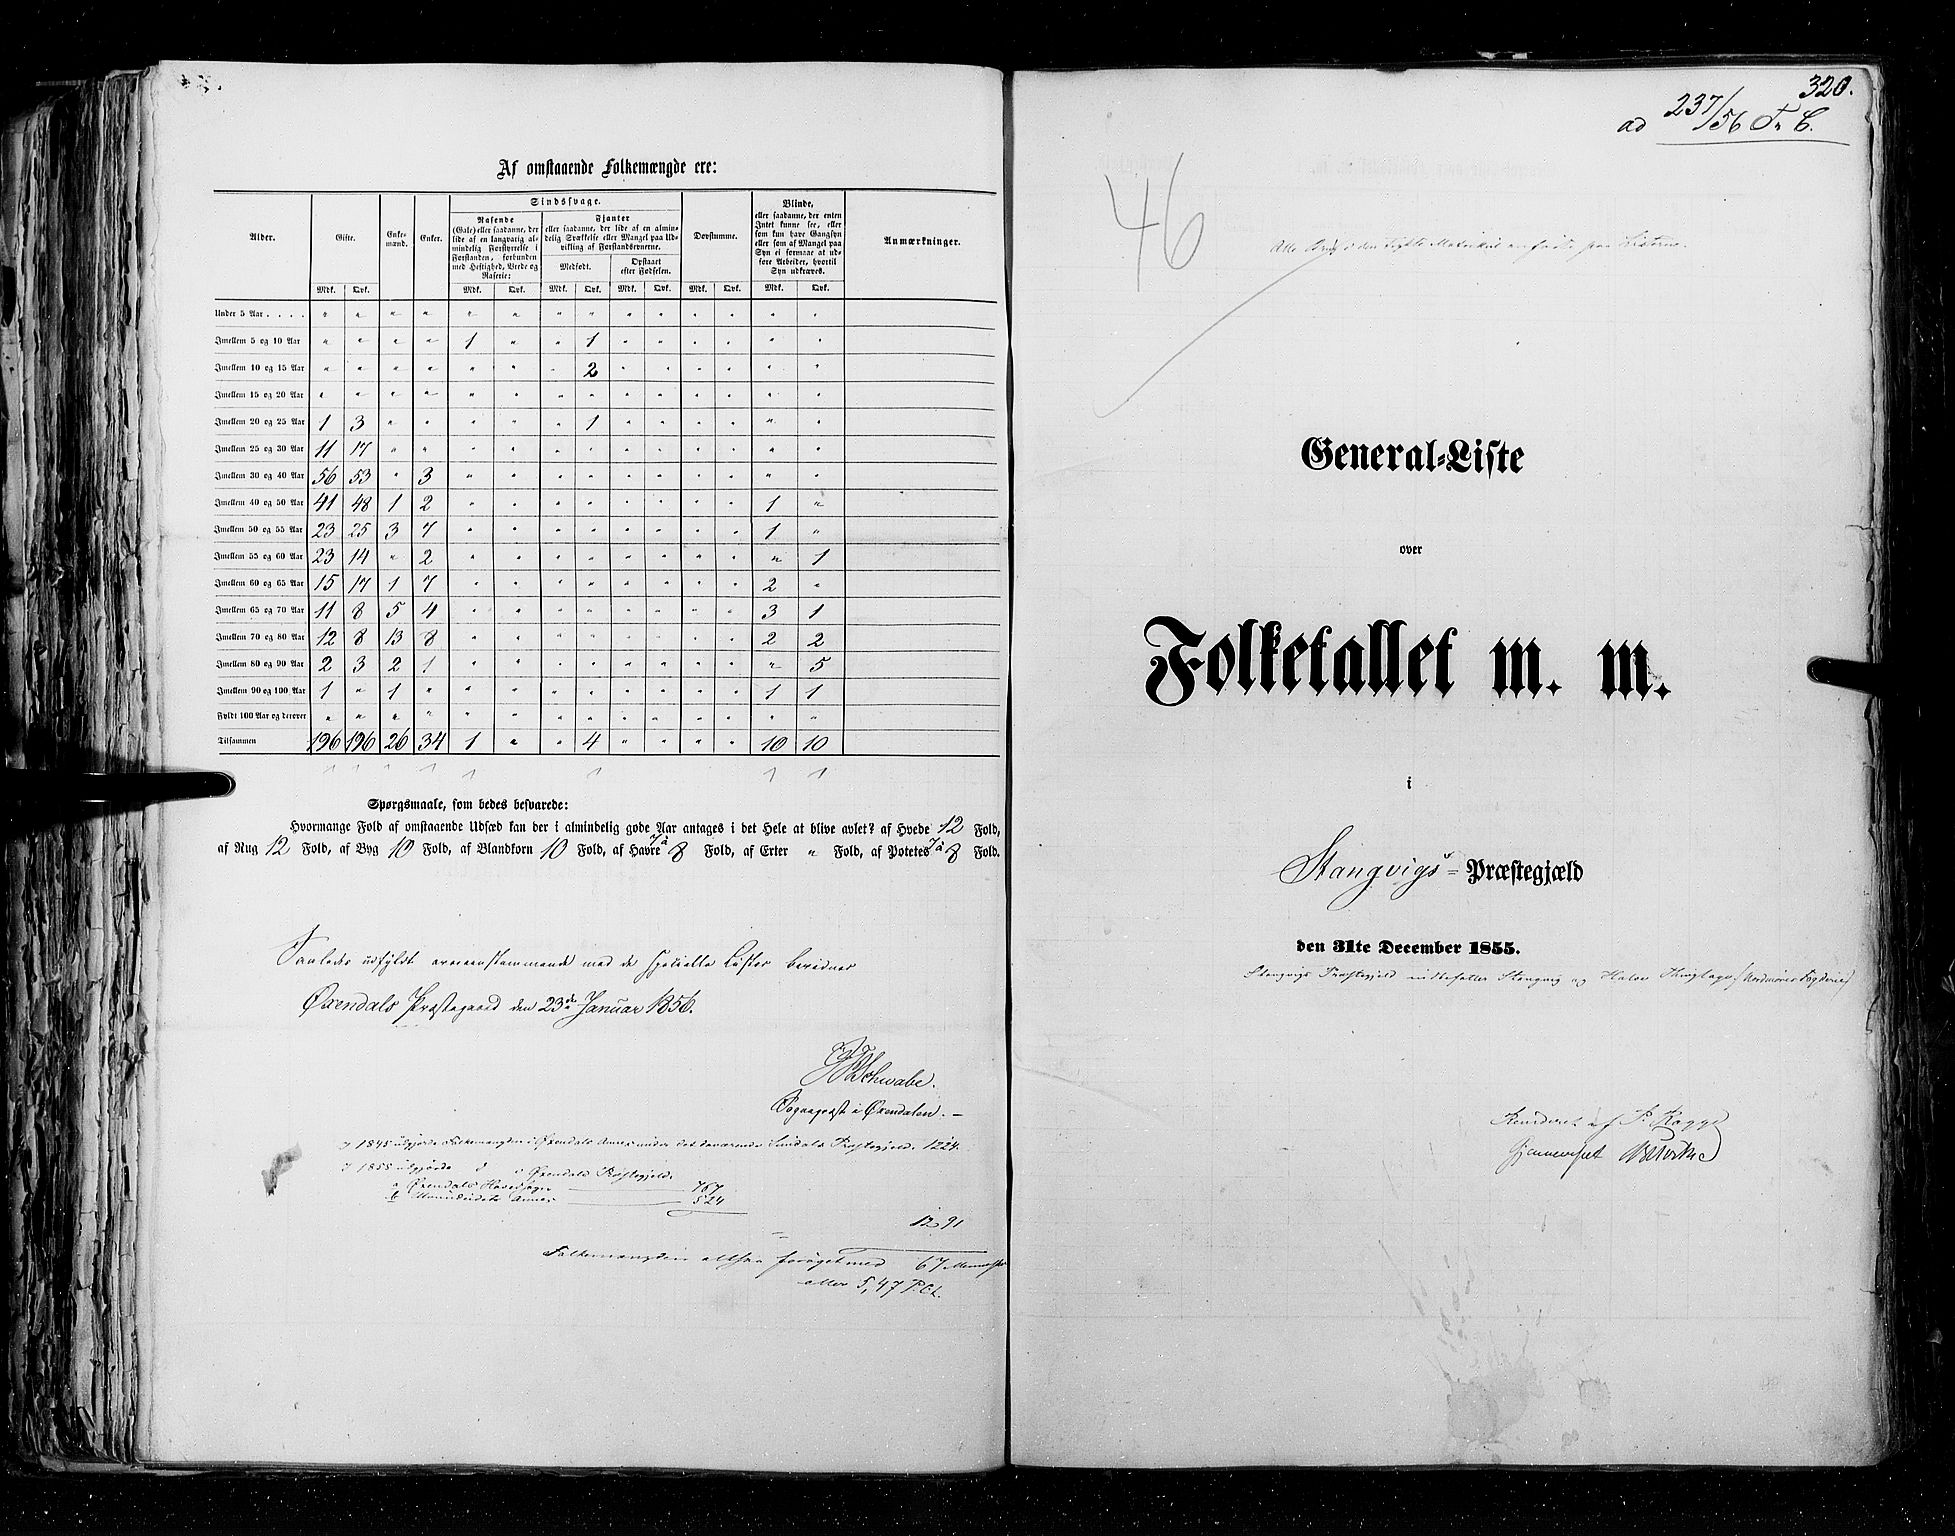 RA, Census 1855, vol. 5: Nordre Bergenhus amt, Romsdal amt og Søndre Trondhjem amt, 1855, p. 320